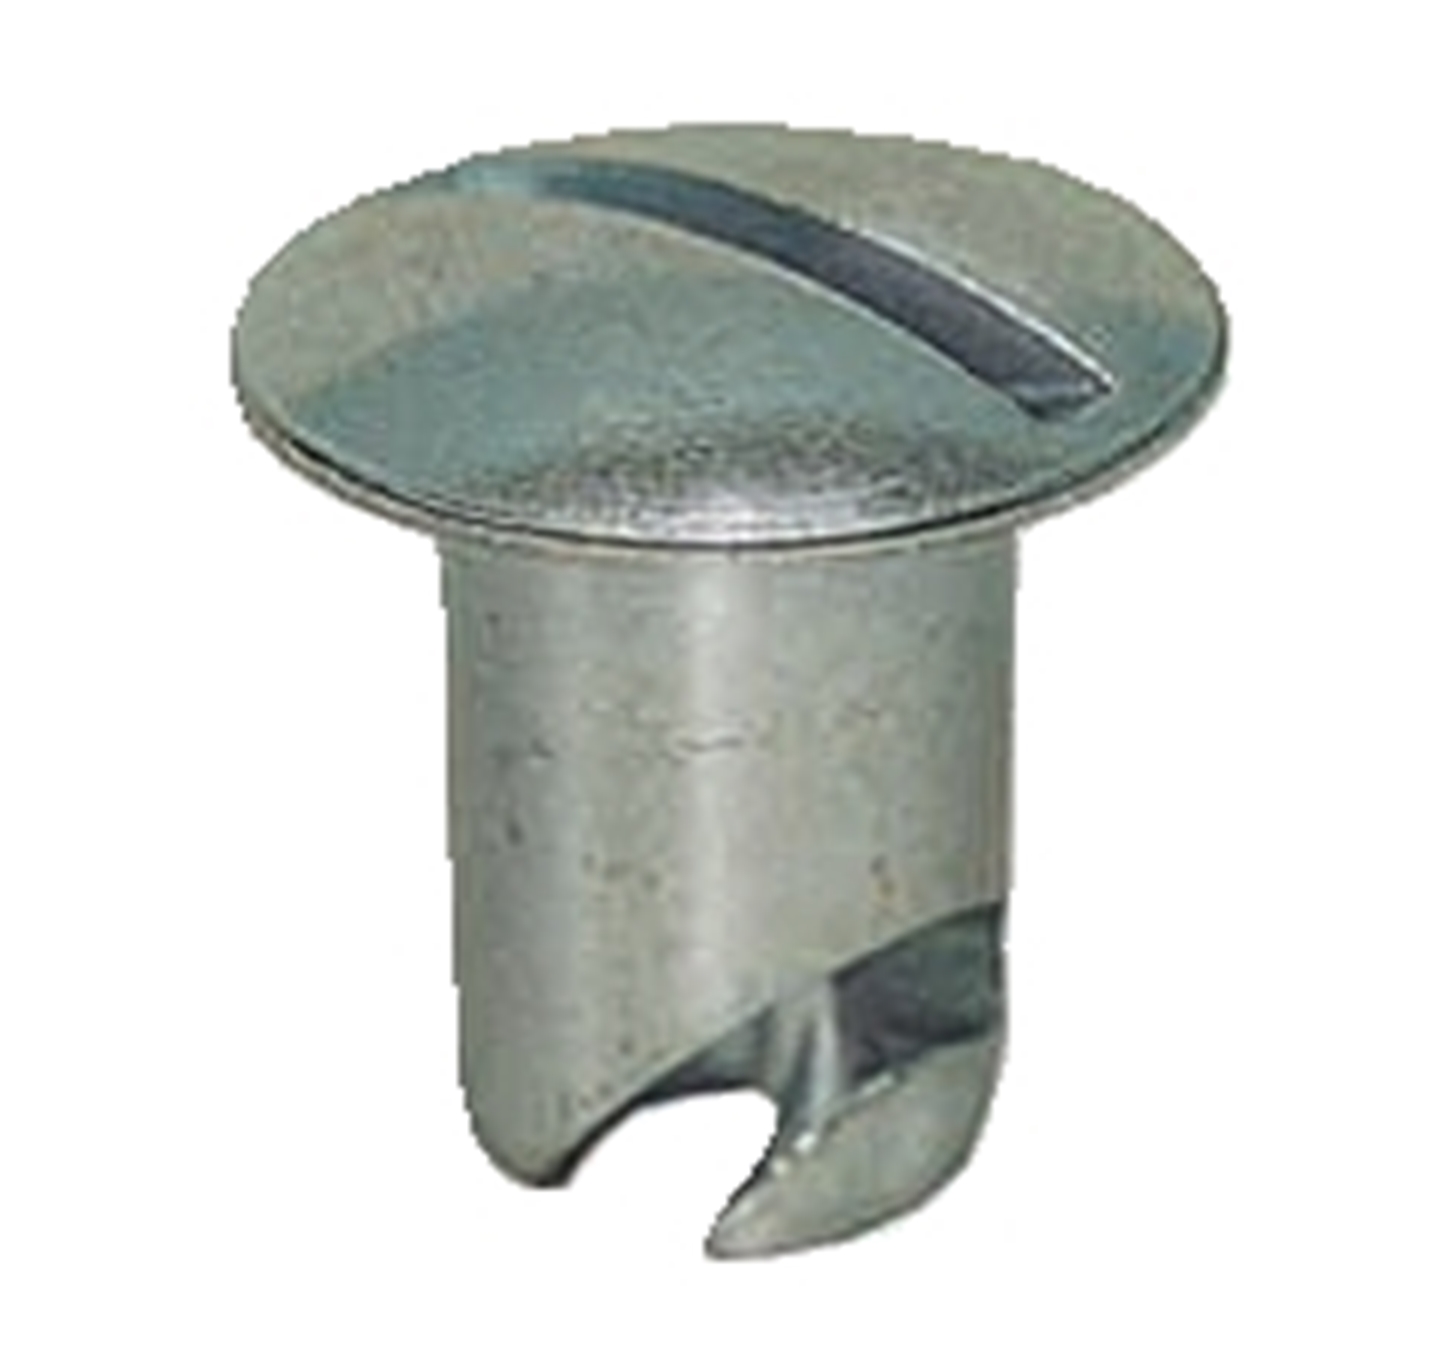 Panelfast 7/16" Aluminum Oval Head .750" Grip